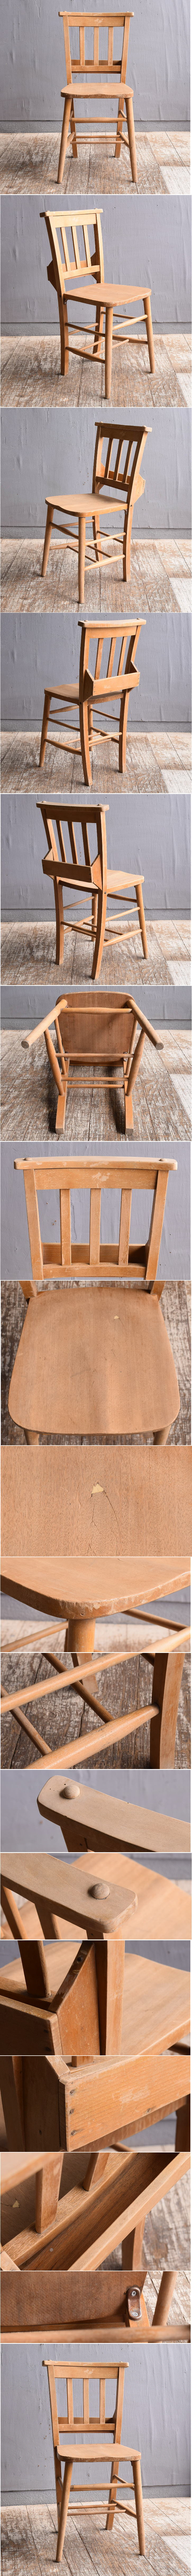 イギリス アンティーク家具 チャーチチェア 椅子 11869